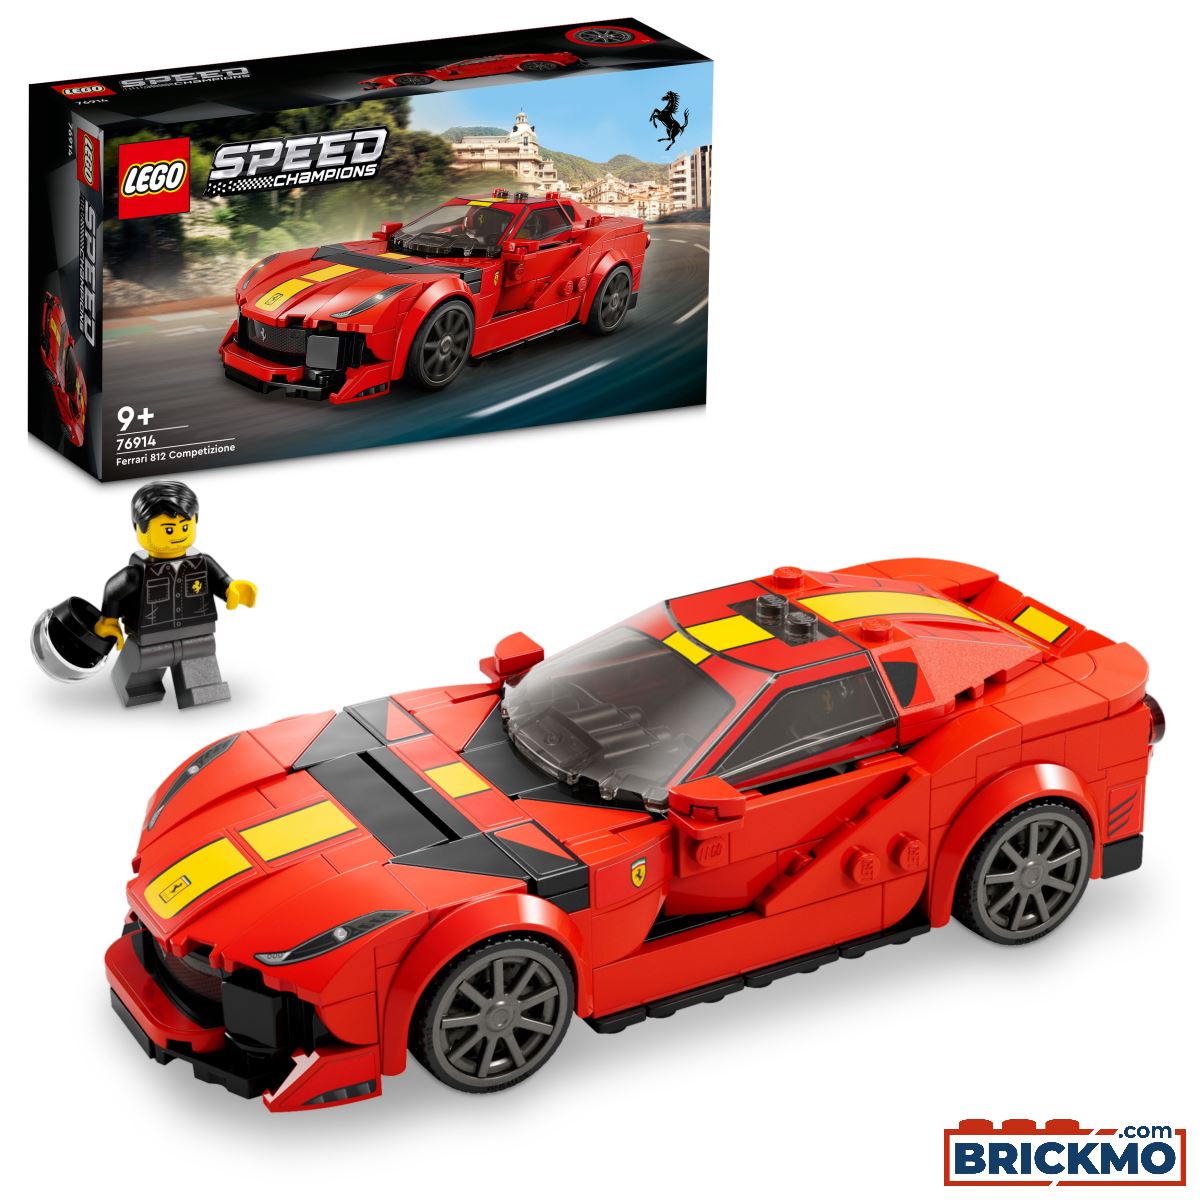 LEGO Speed Champion 76914 Ferrari 812 Competizione 76914  TRUCKMO.it -  Modellismo Industriale - Modelli di Camion